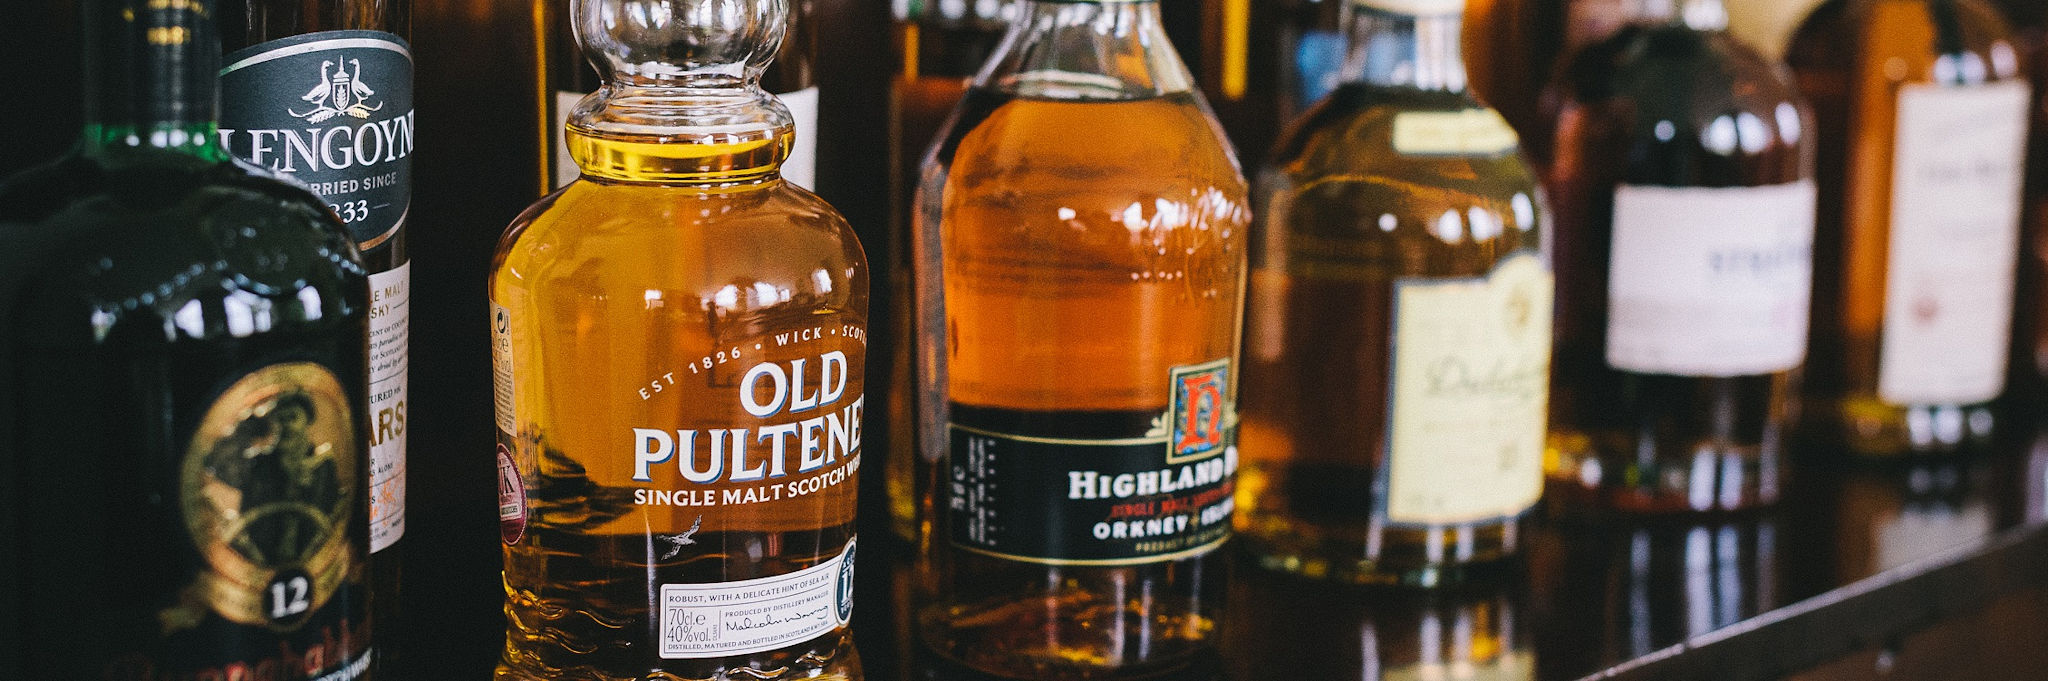 whisky bottles in Scotland